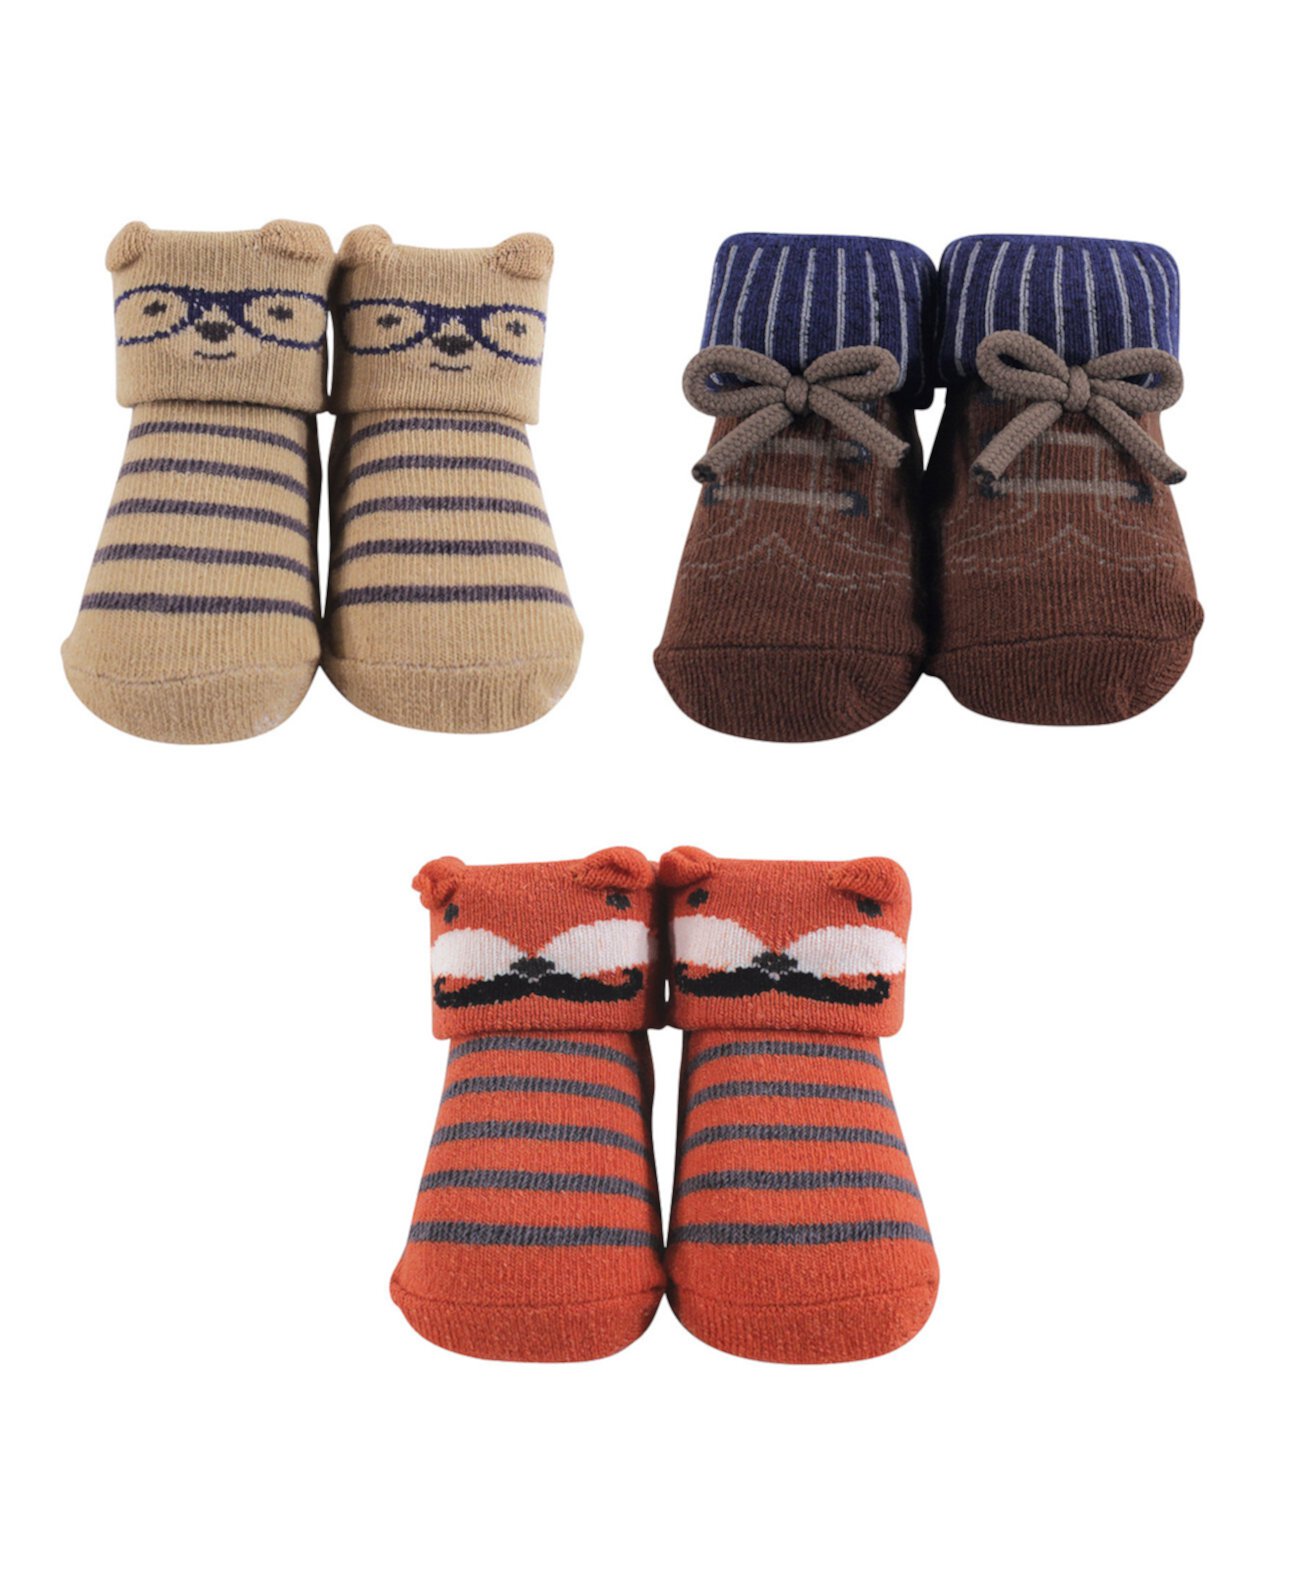 Baby Girl Socks Gift Set, 3-Pack Hudson Baby